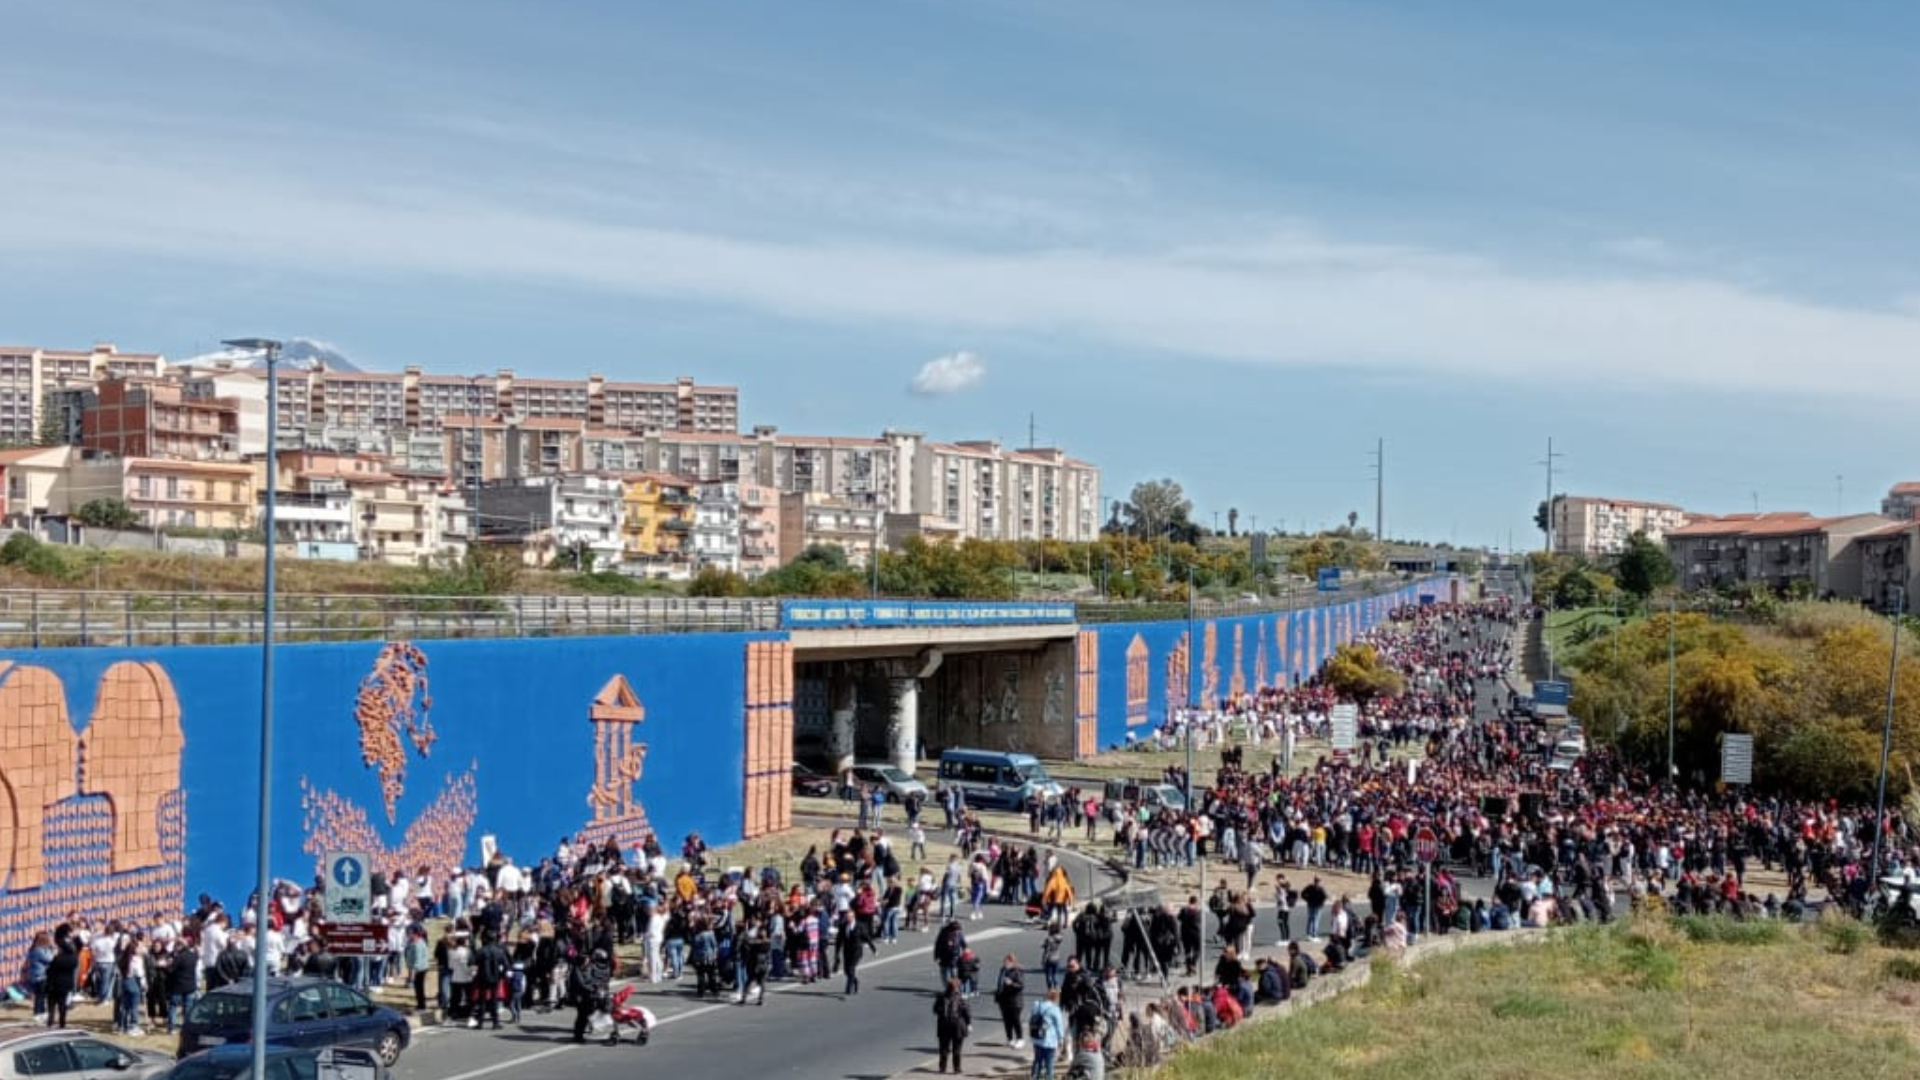 L’inaugurazione della Porta delle Farfalle in viale Nitta a Librino<br>Fiumi di studenti per l’opera monumentale più grande al mondo